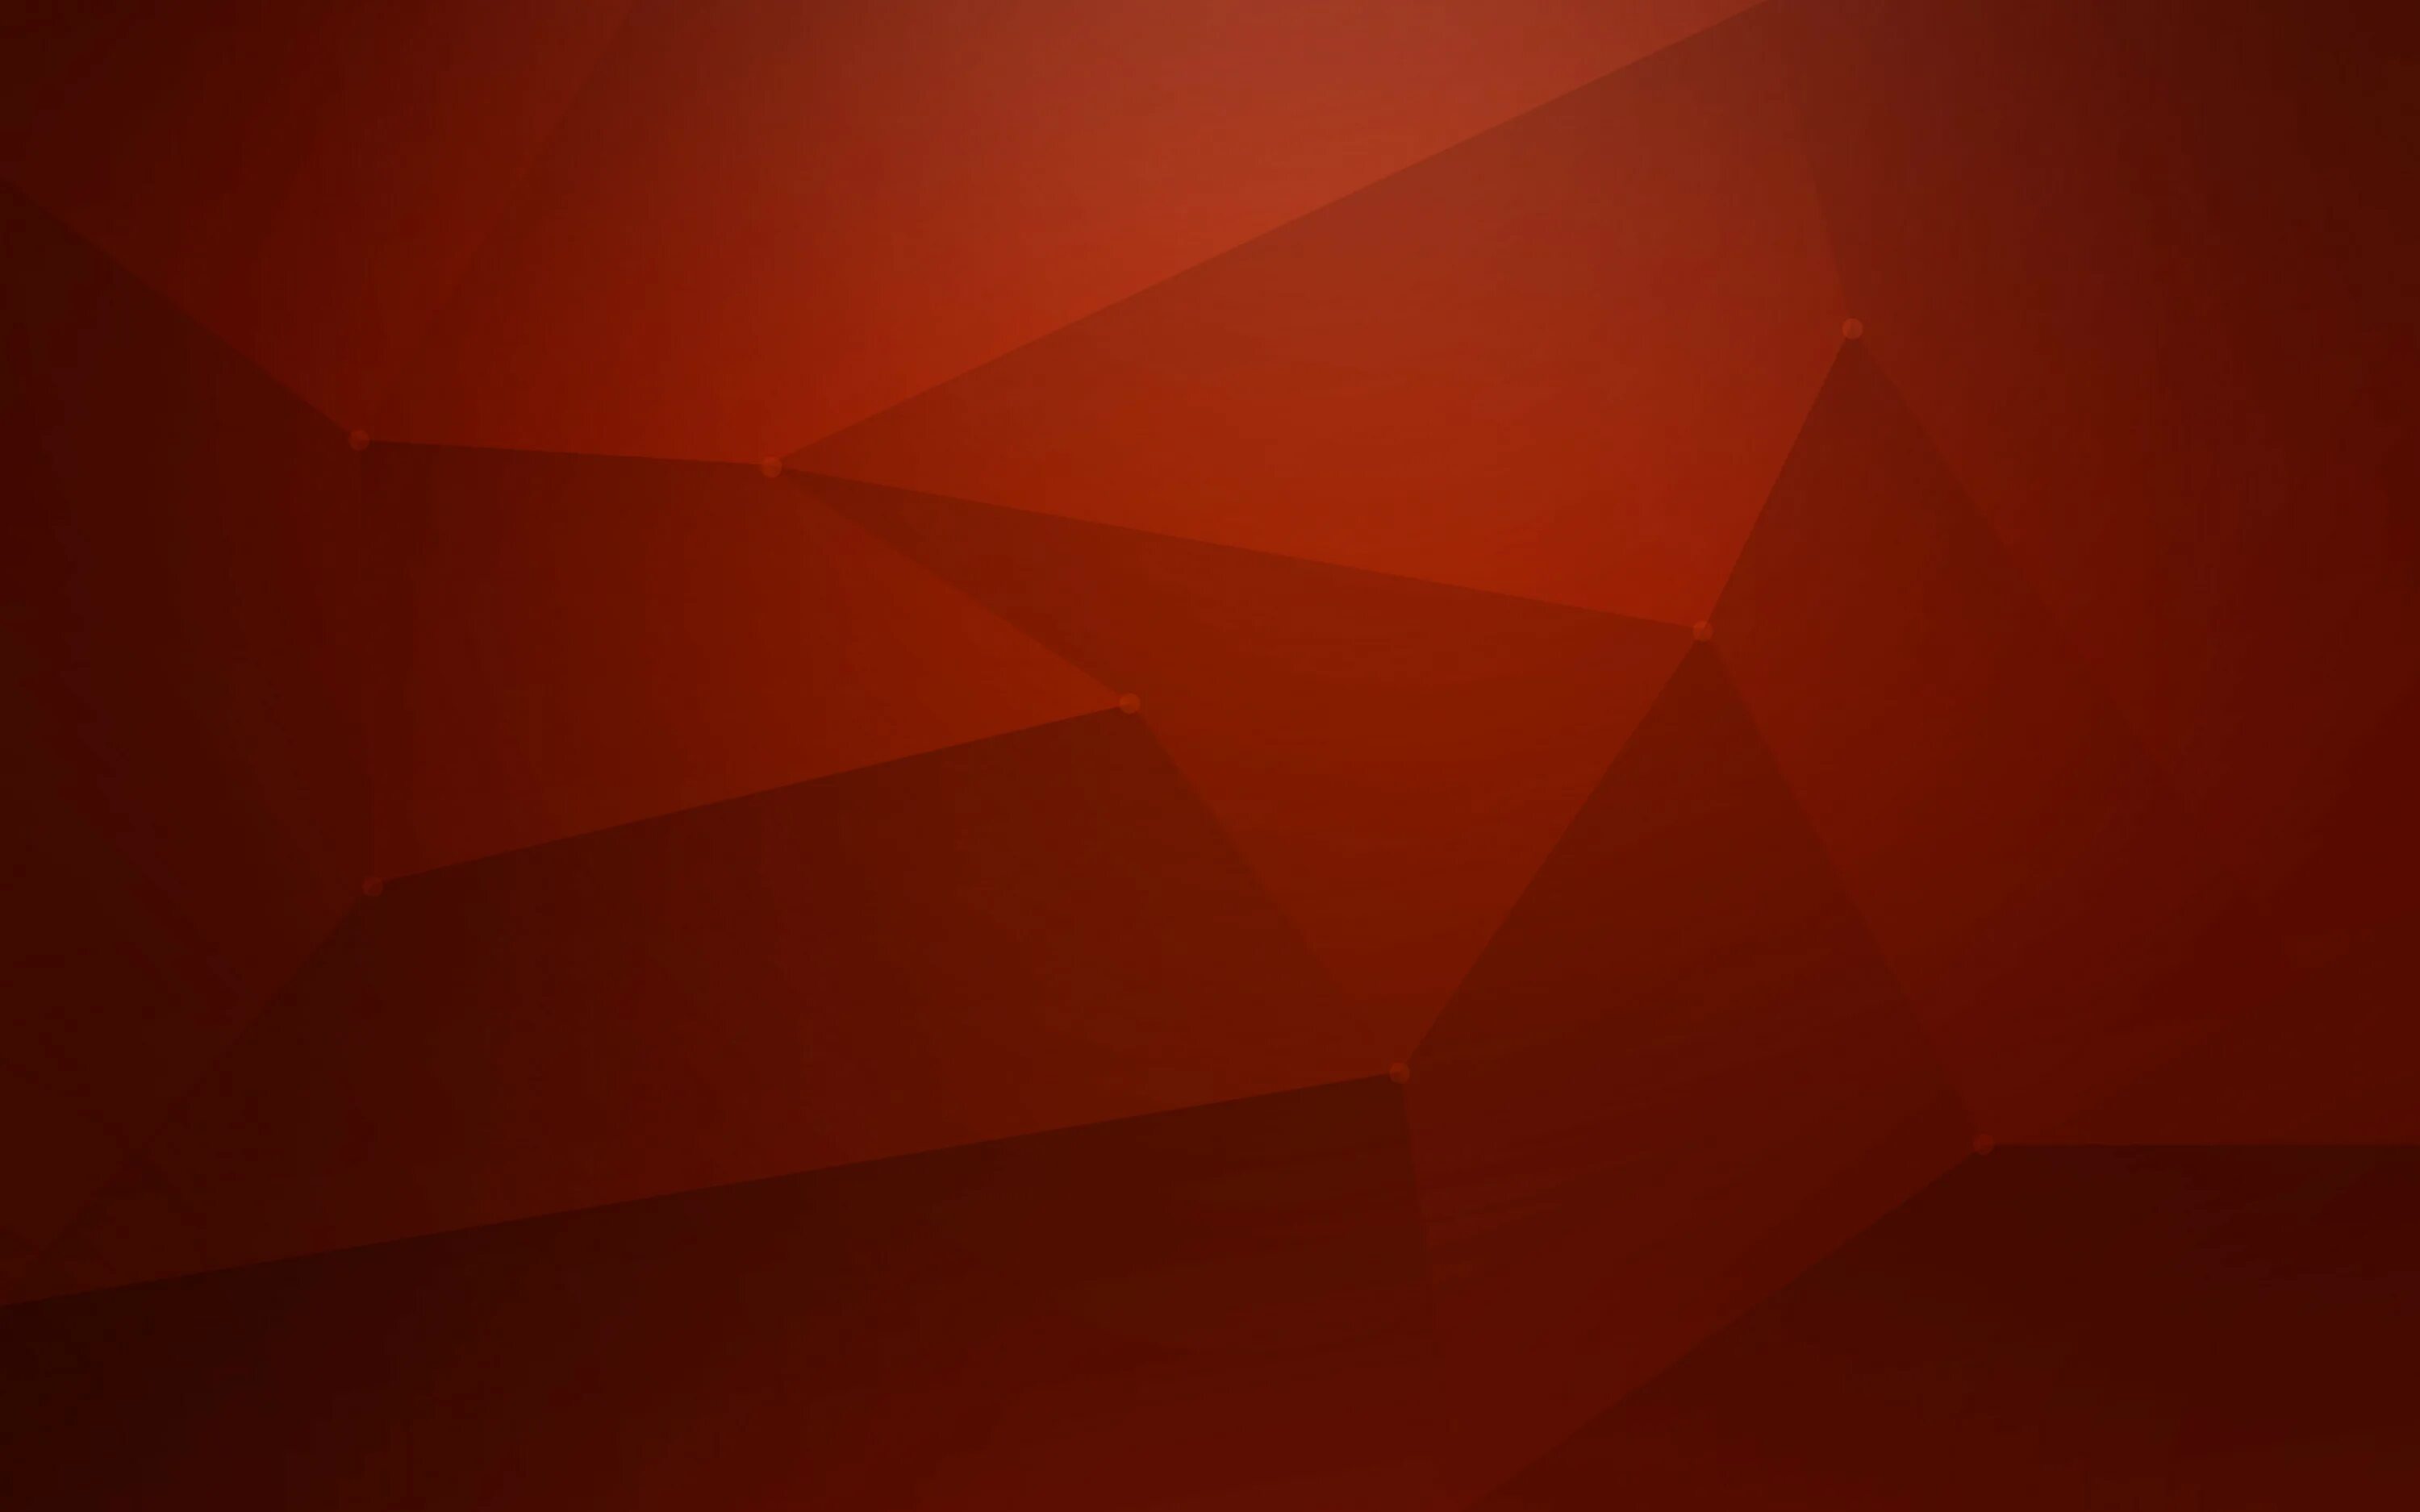 Ubuntu 22.10 Wallpaper. Фон Ubuntu. Обои Ubuntu. Обои на рабочий стол Ubuntu. Обои 16 10